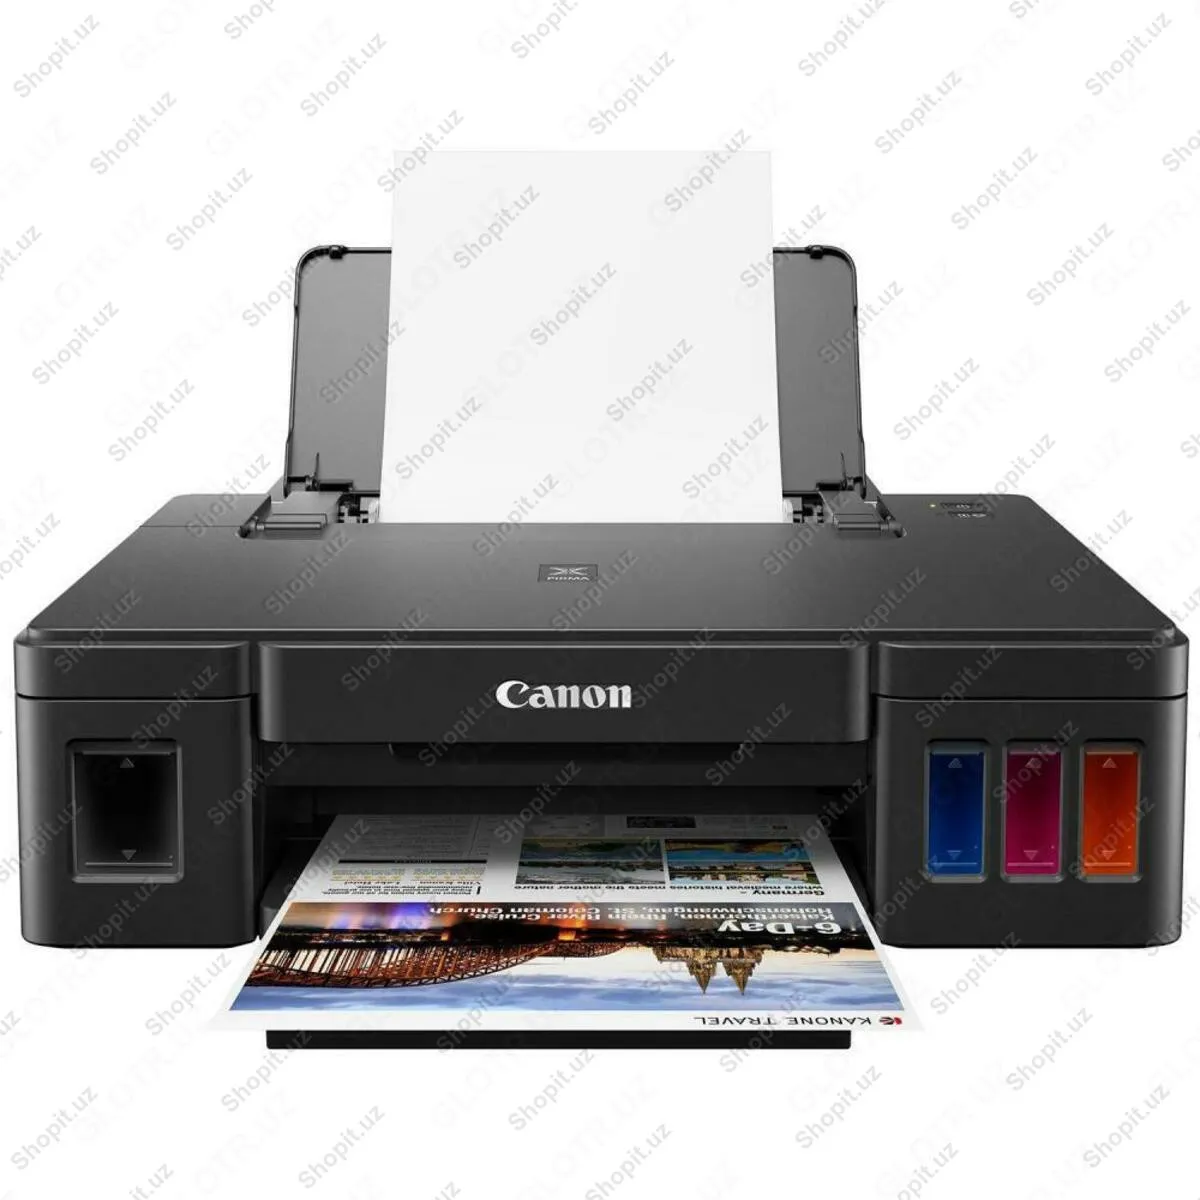 Printer - Canon PIXMA G1411#1